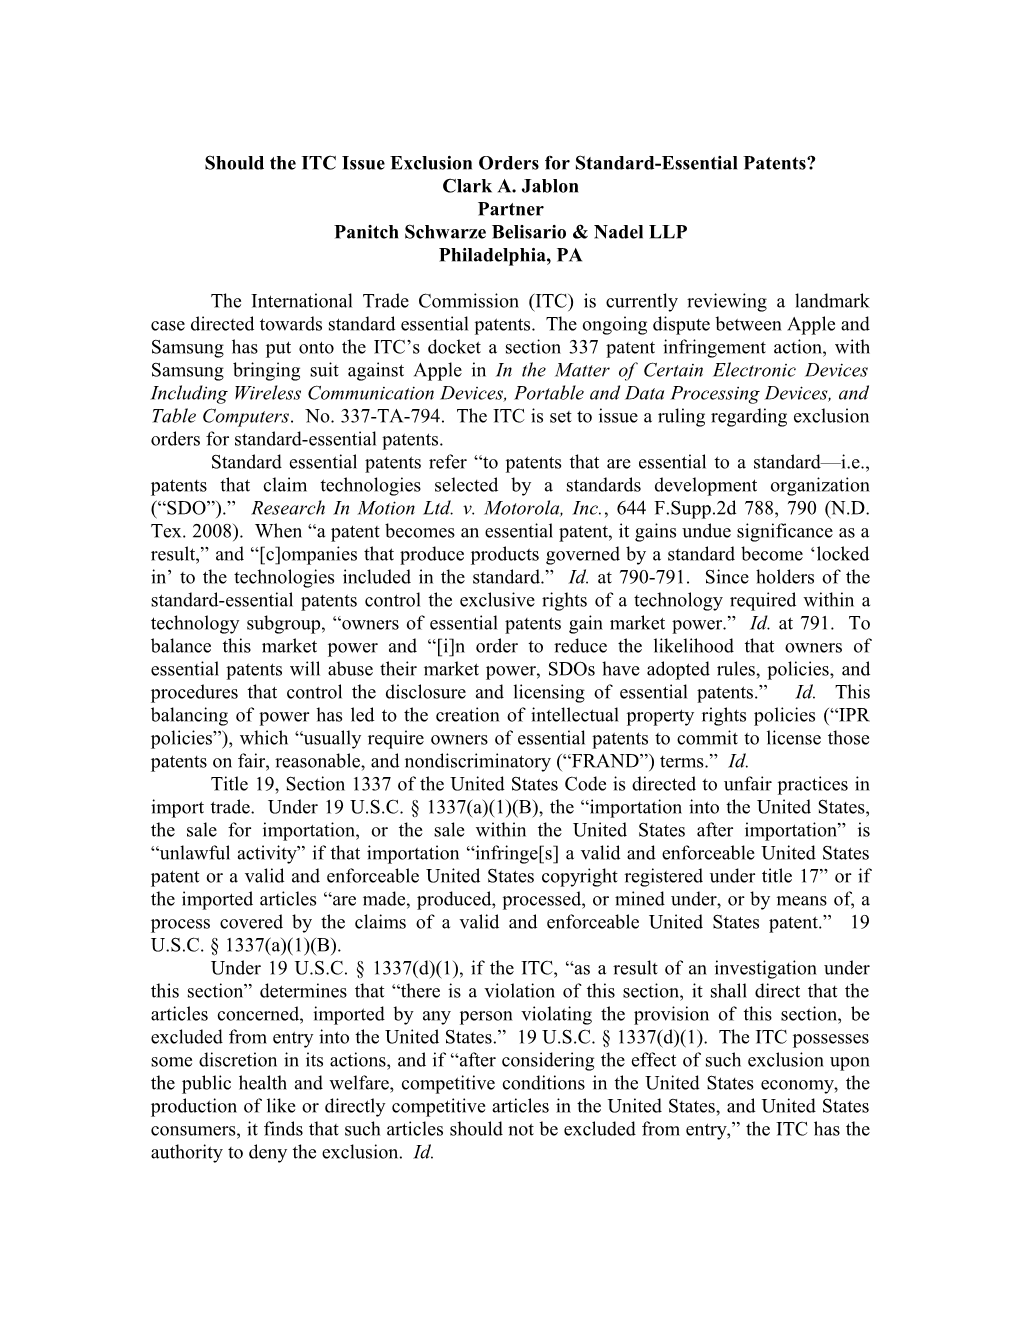 Joint Patent Practice Seminar Manuscript (00499767-2)